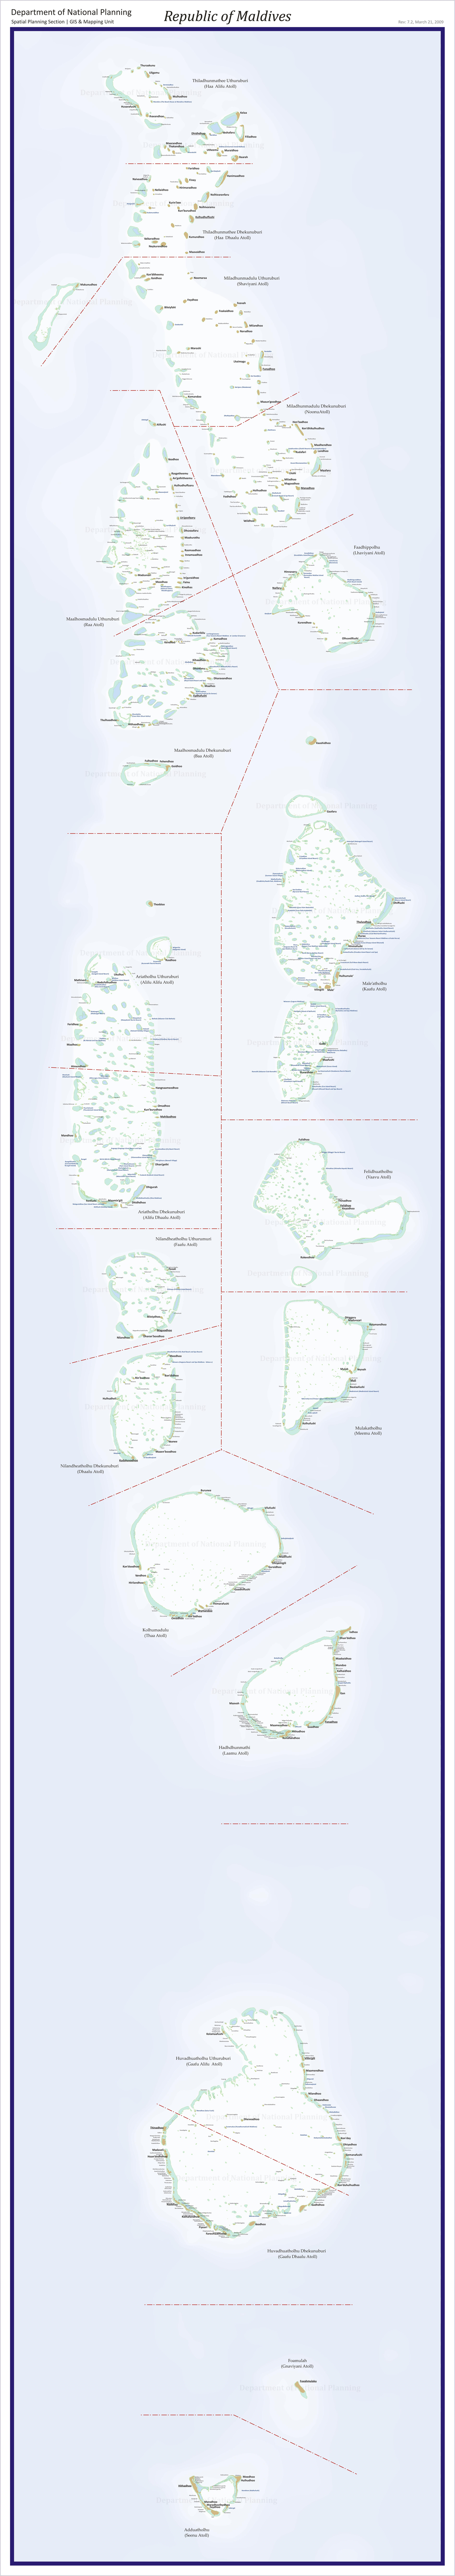 Map of Maldives 2009